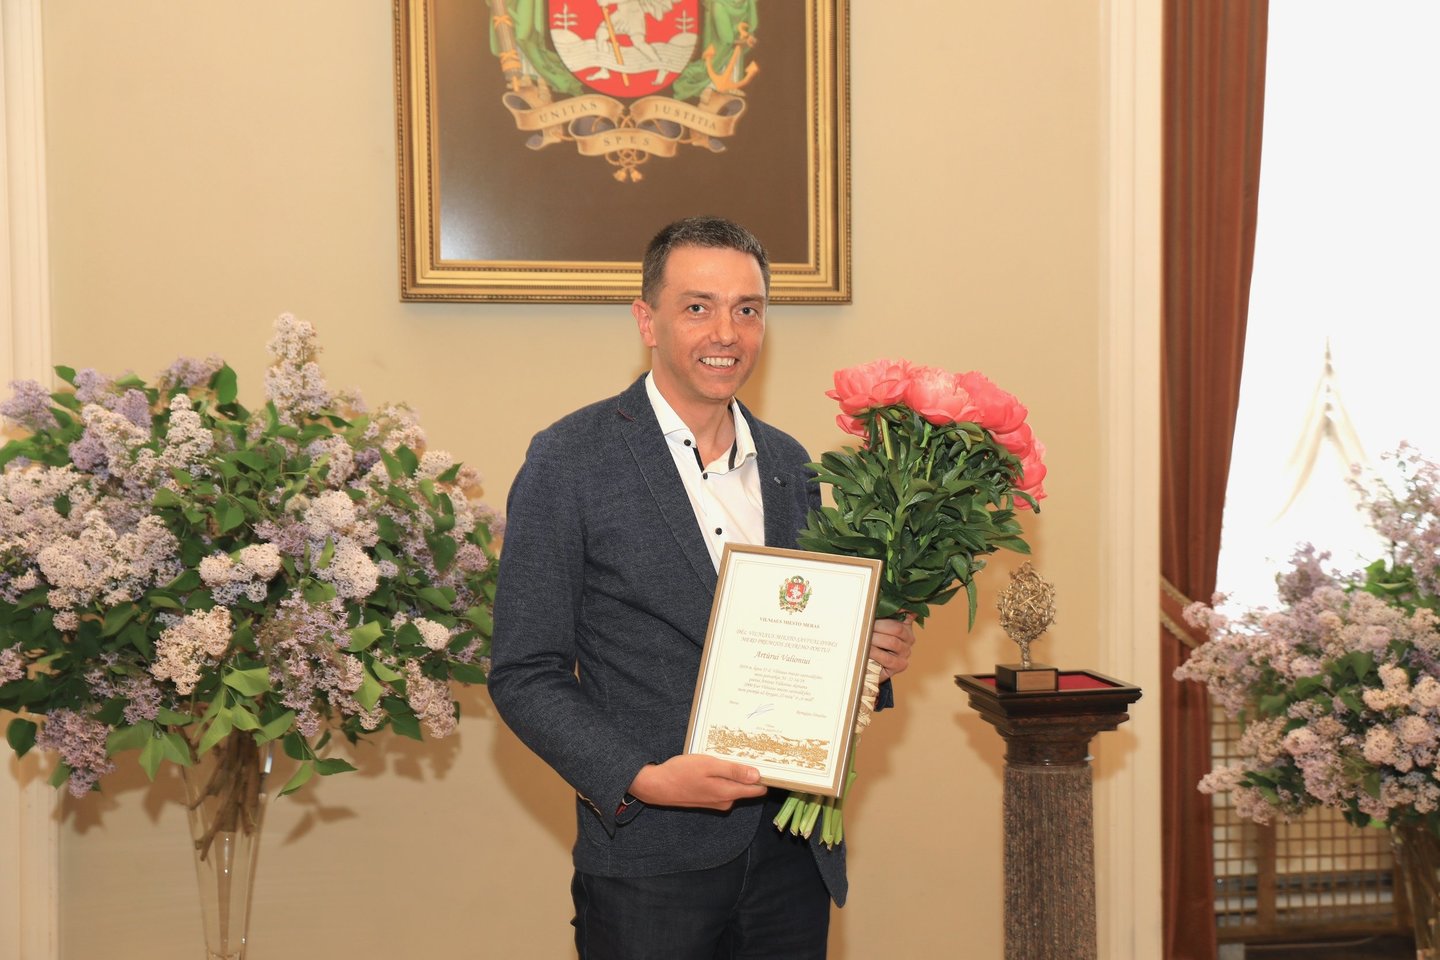  Vilniaus meras premiją įteikė poetui Artūrui Valioniui.<br> Vilniaus savivaldybės nuotr.